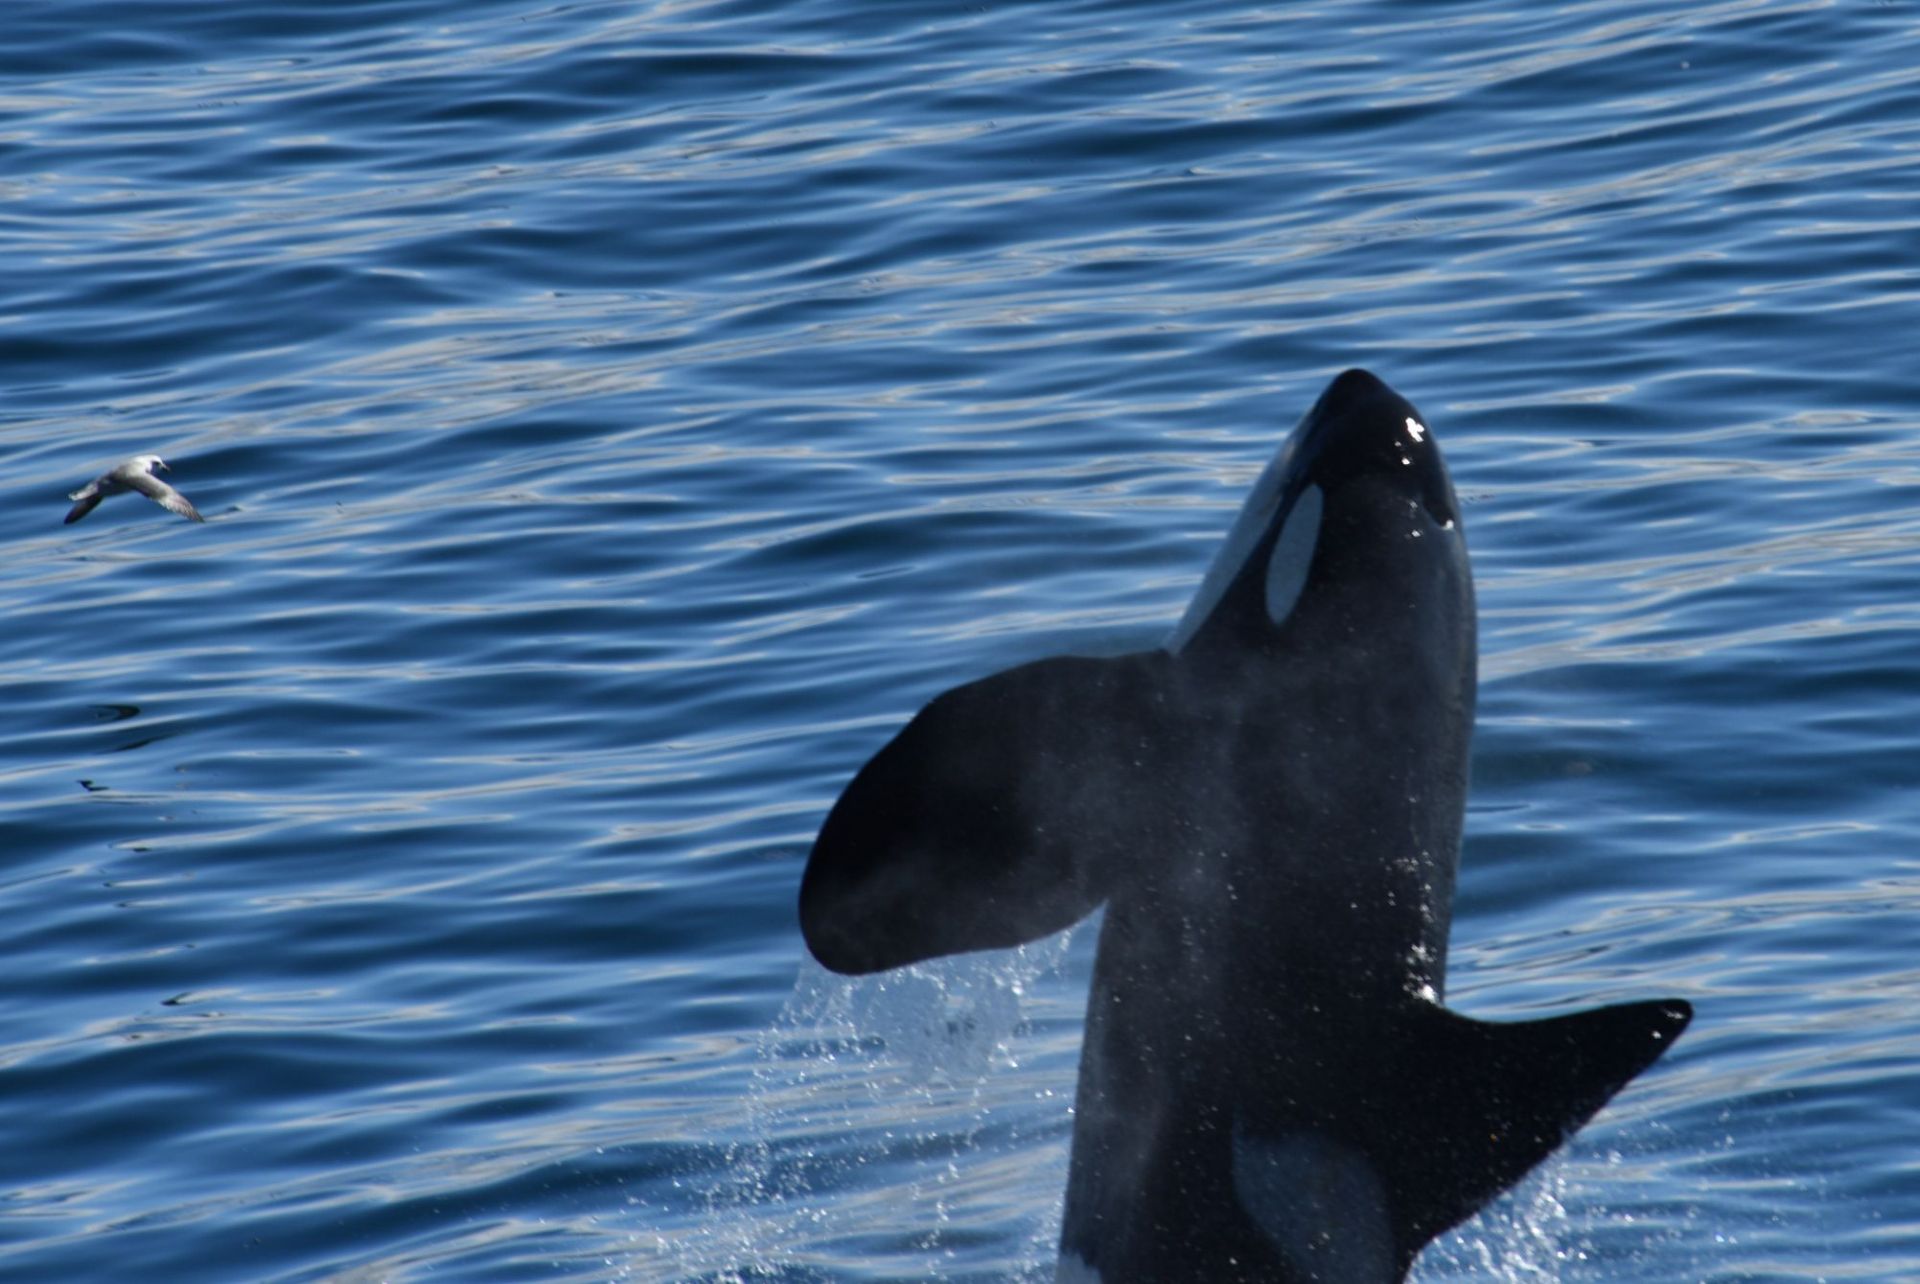 在格陵兰海拍摄到的虎鲸，这是食肉的鲸鱼，能够直立跃出水面。